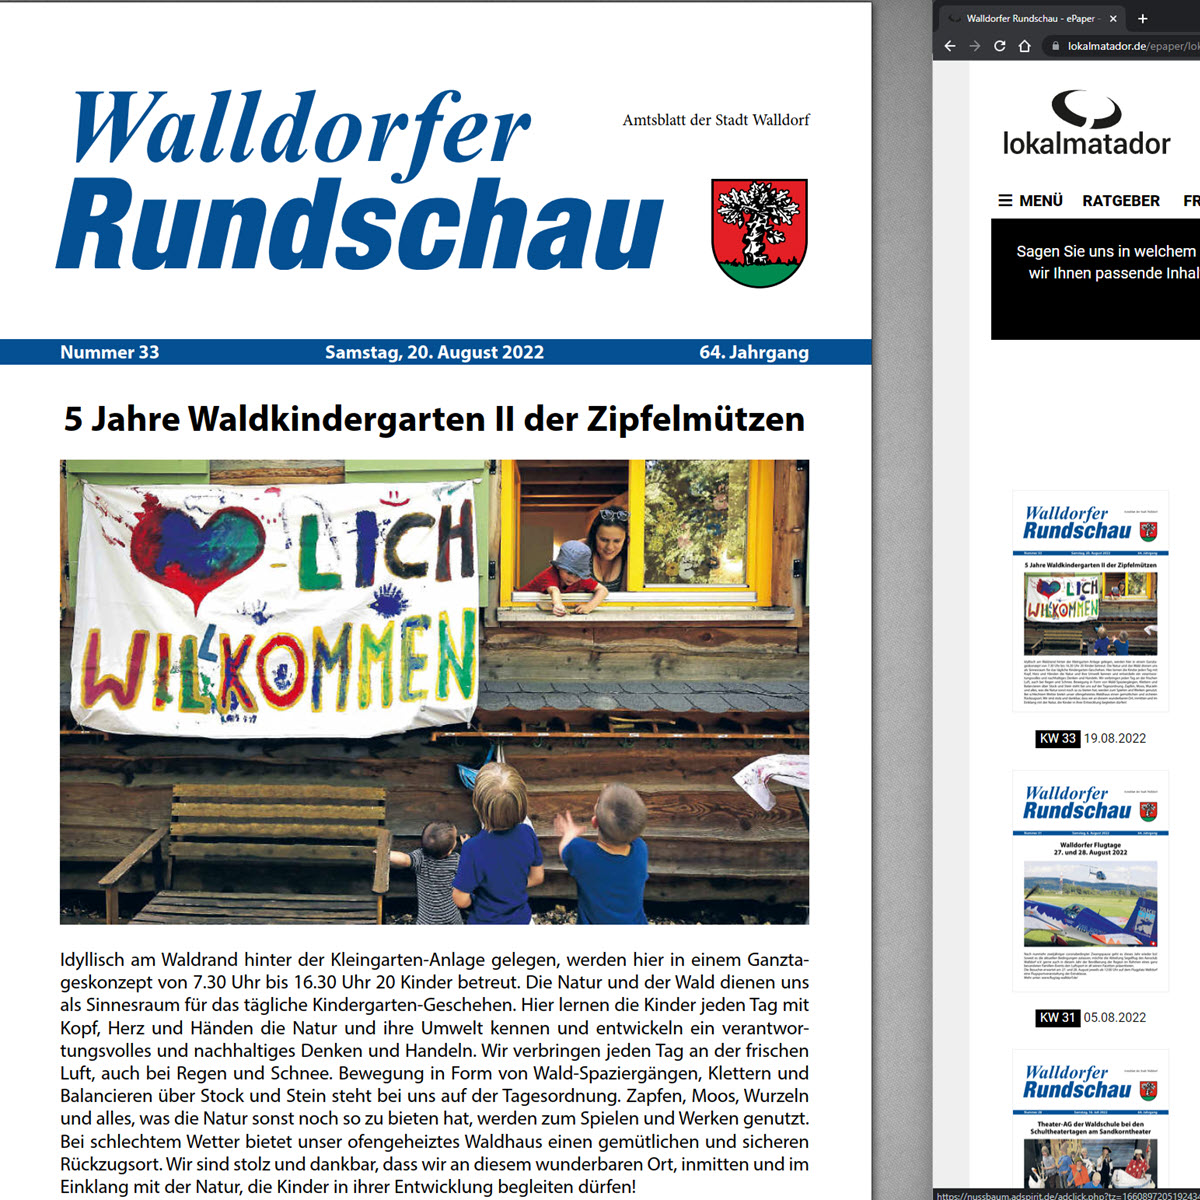 Die Walldorfer Rundschau 2022 Nr. 33 als E-paper | Bildschirmabgriff